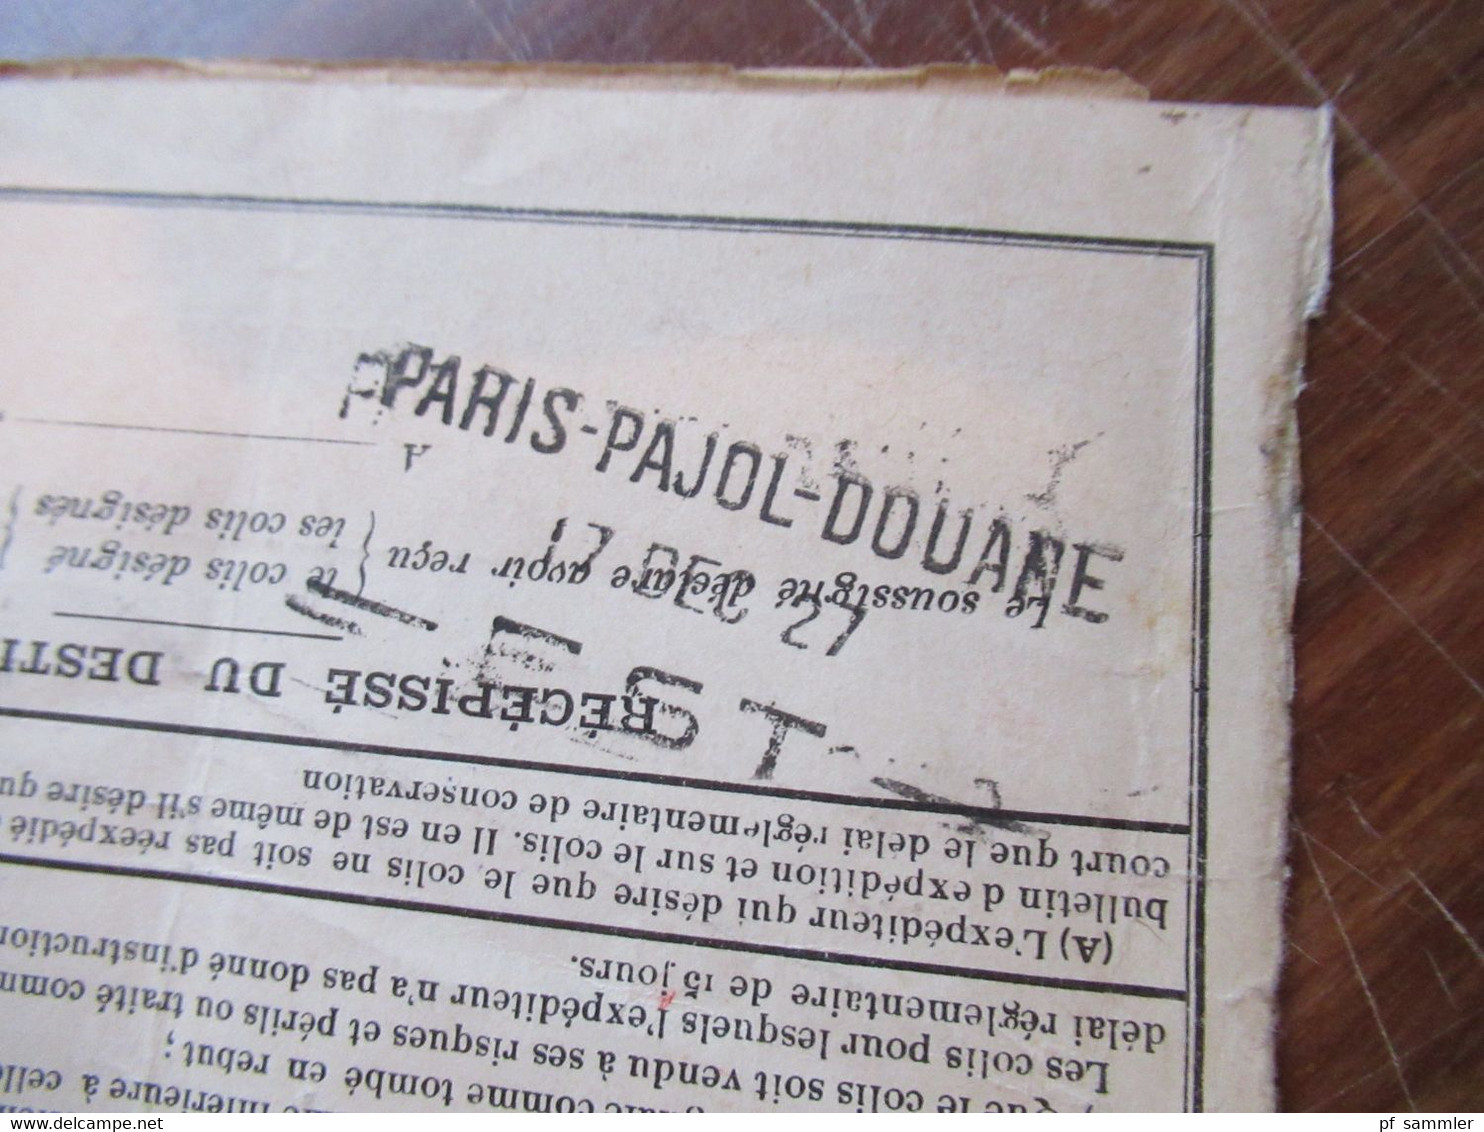 Frankreich 1927 Auslandspaketkarte Colis Postaux in die Schweiz Valeur Declaree / Paris - Est mit vielen Stempeln!!